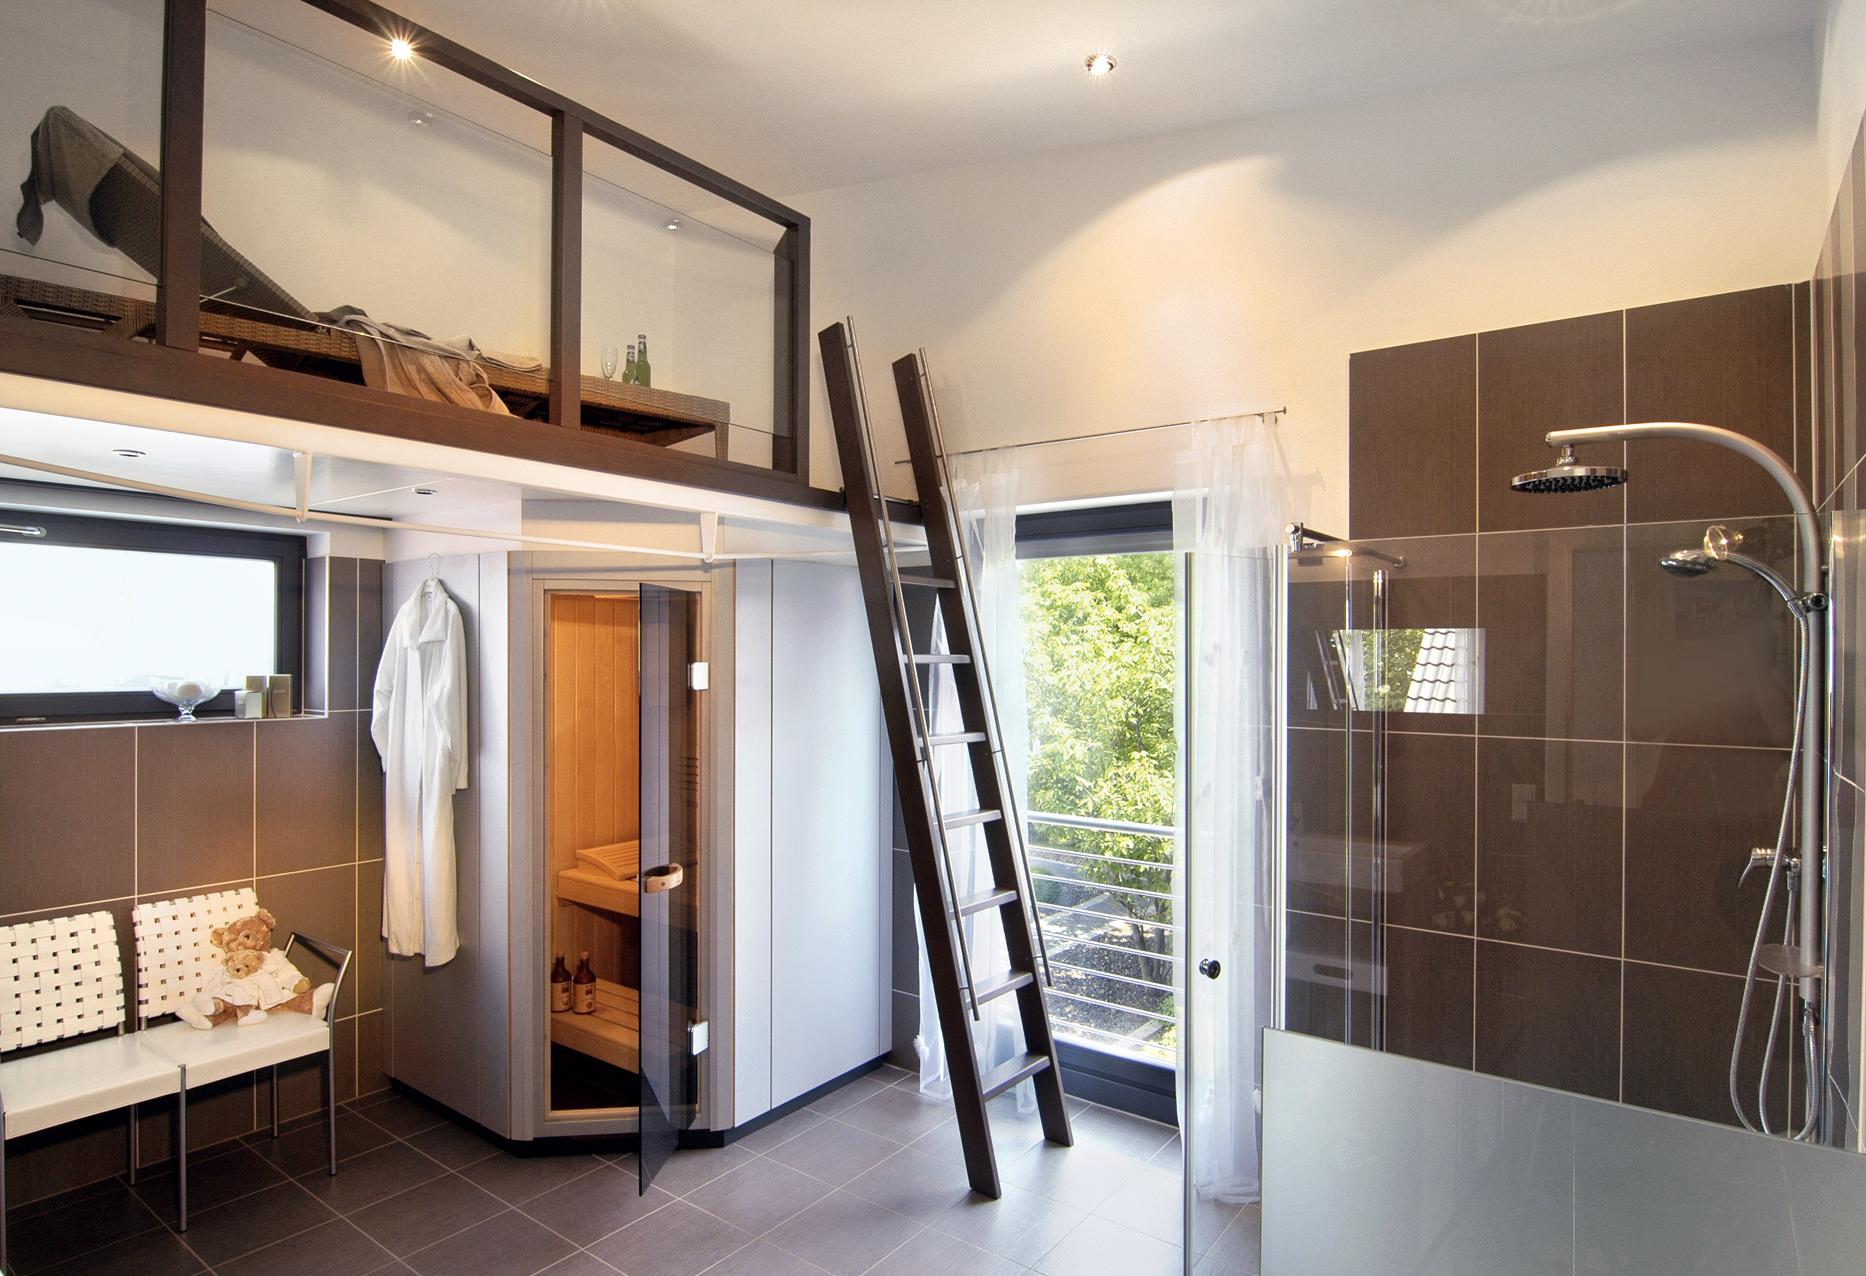 Salle de bain luxueuse avec sauna et galerie